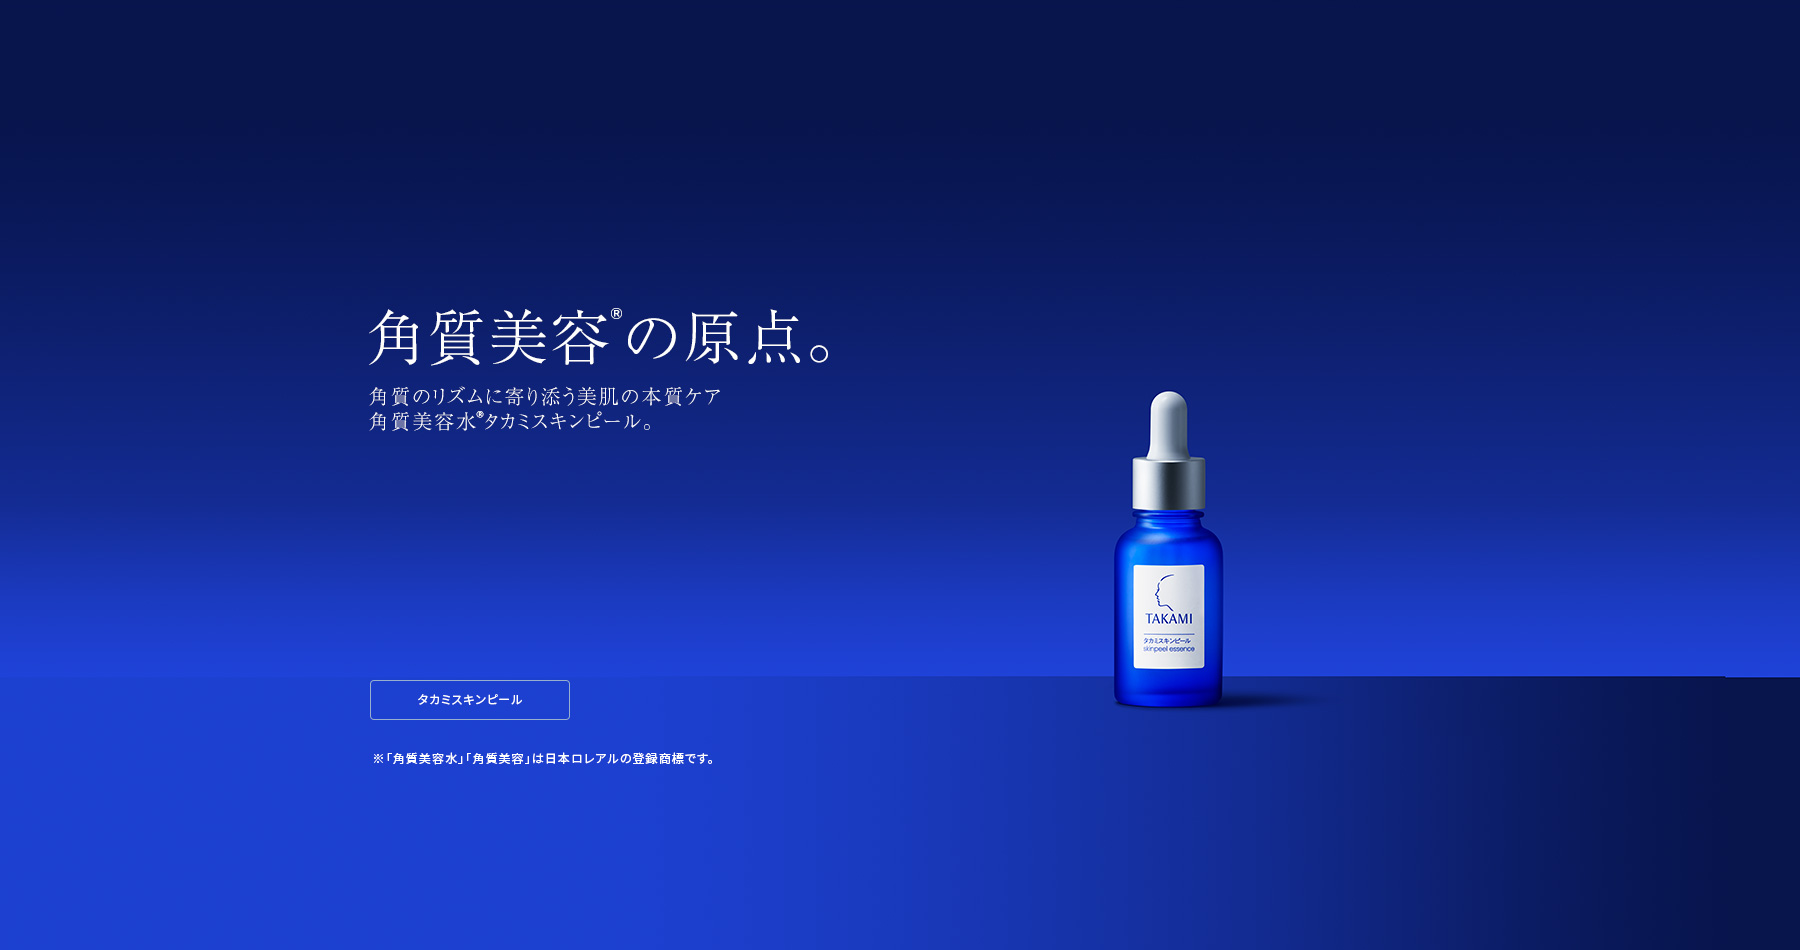 TAKAMI タカミ公式サイト（化粧品）